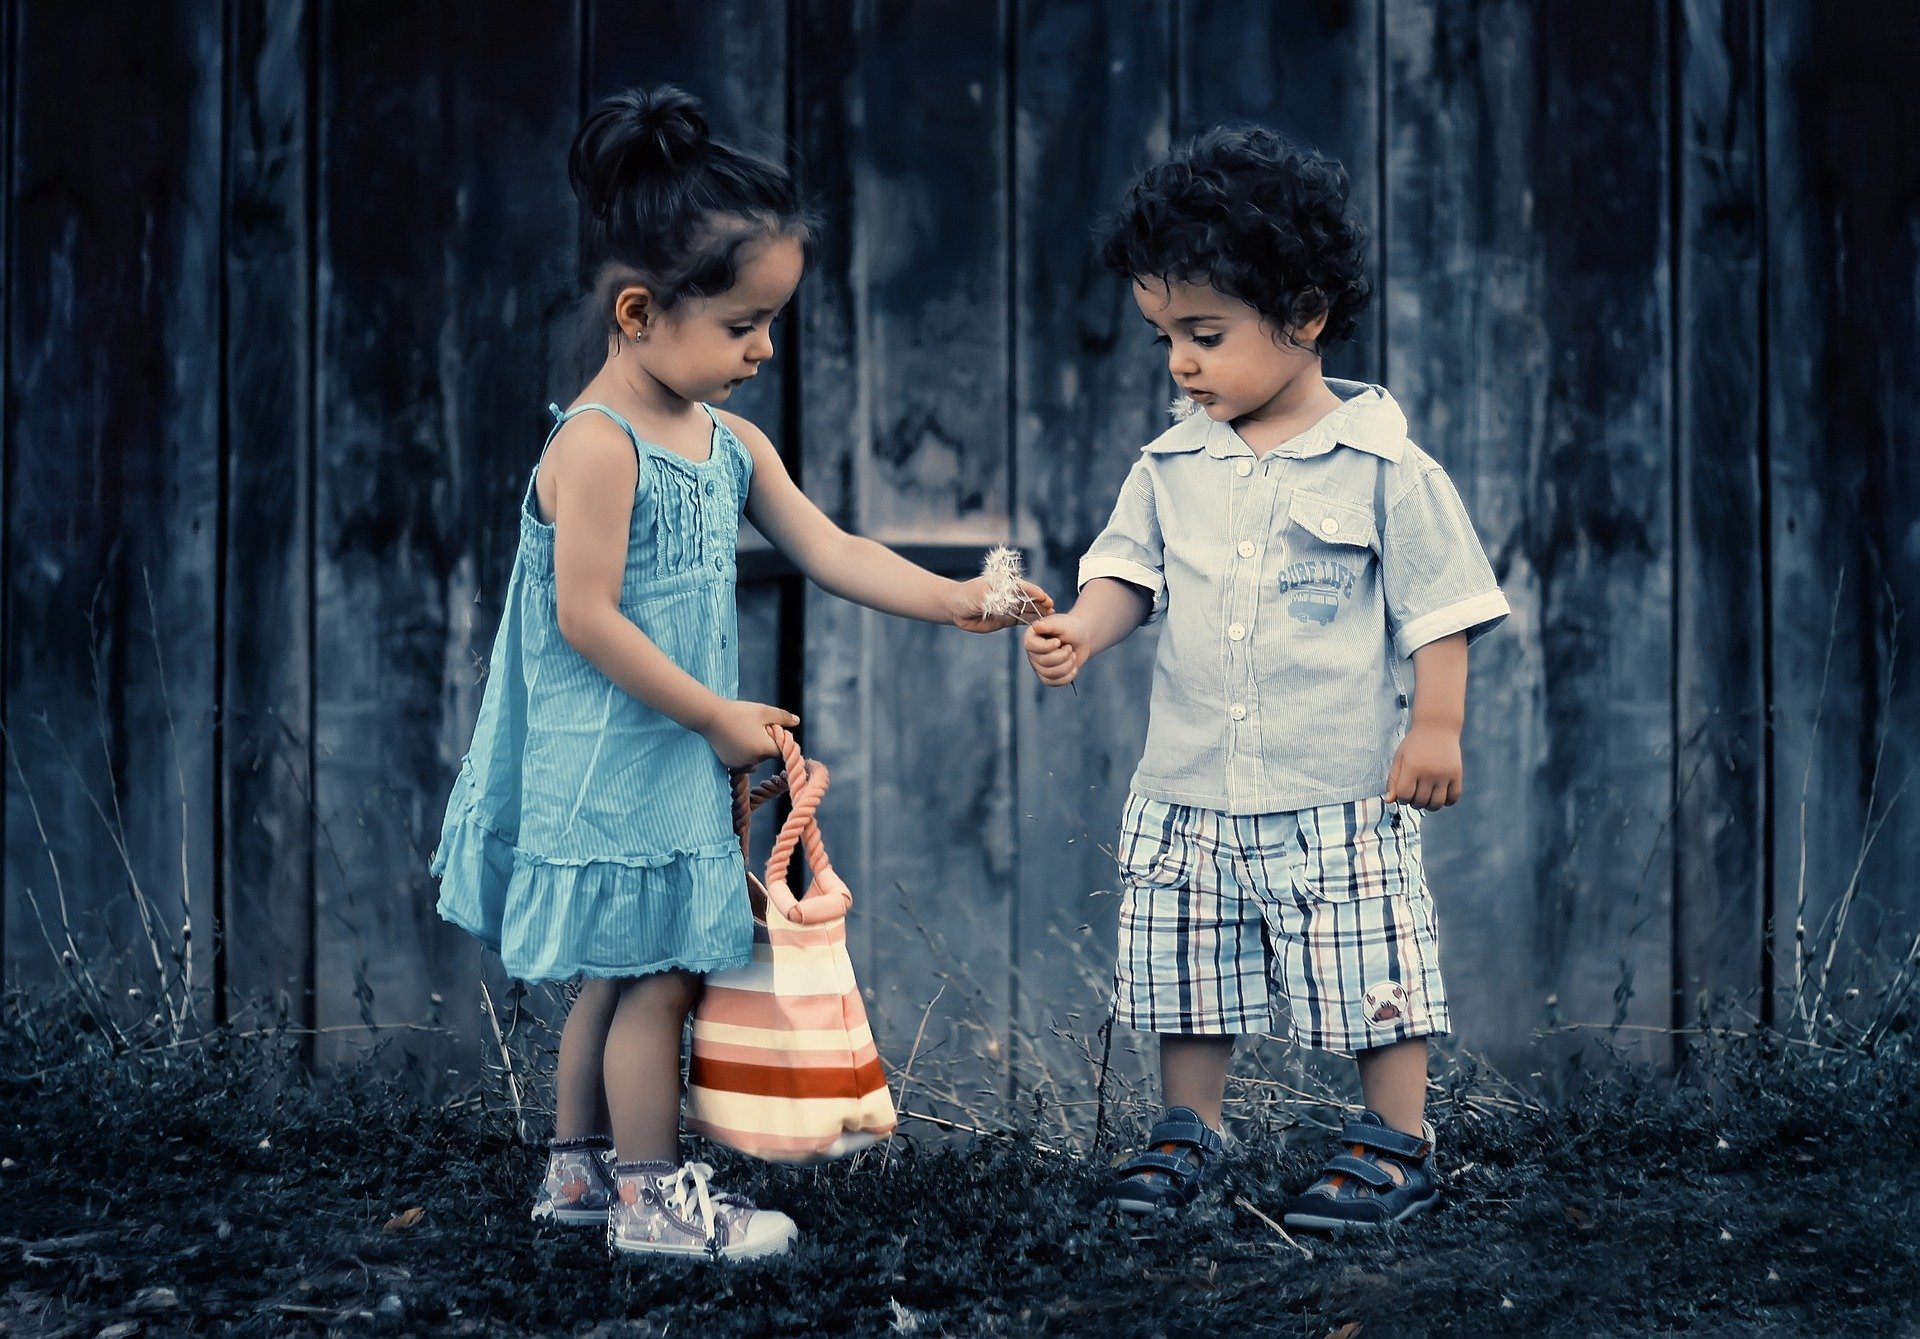 Menino e menina, ambos crianças, entregando flores um ao outro